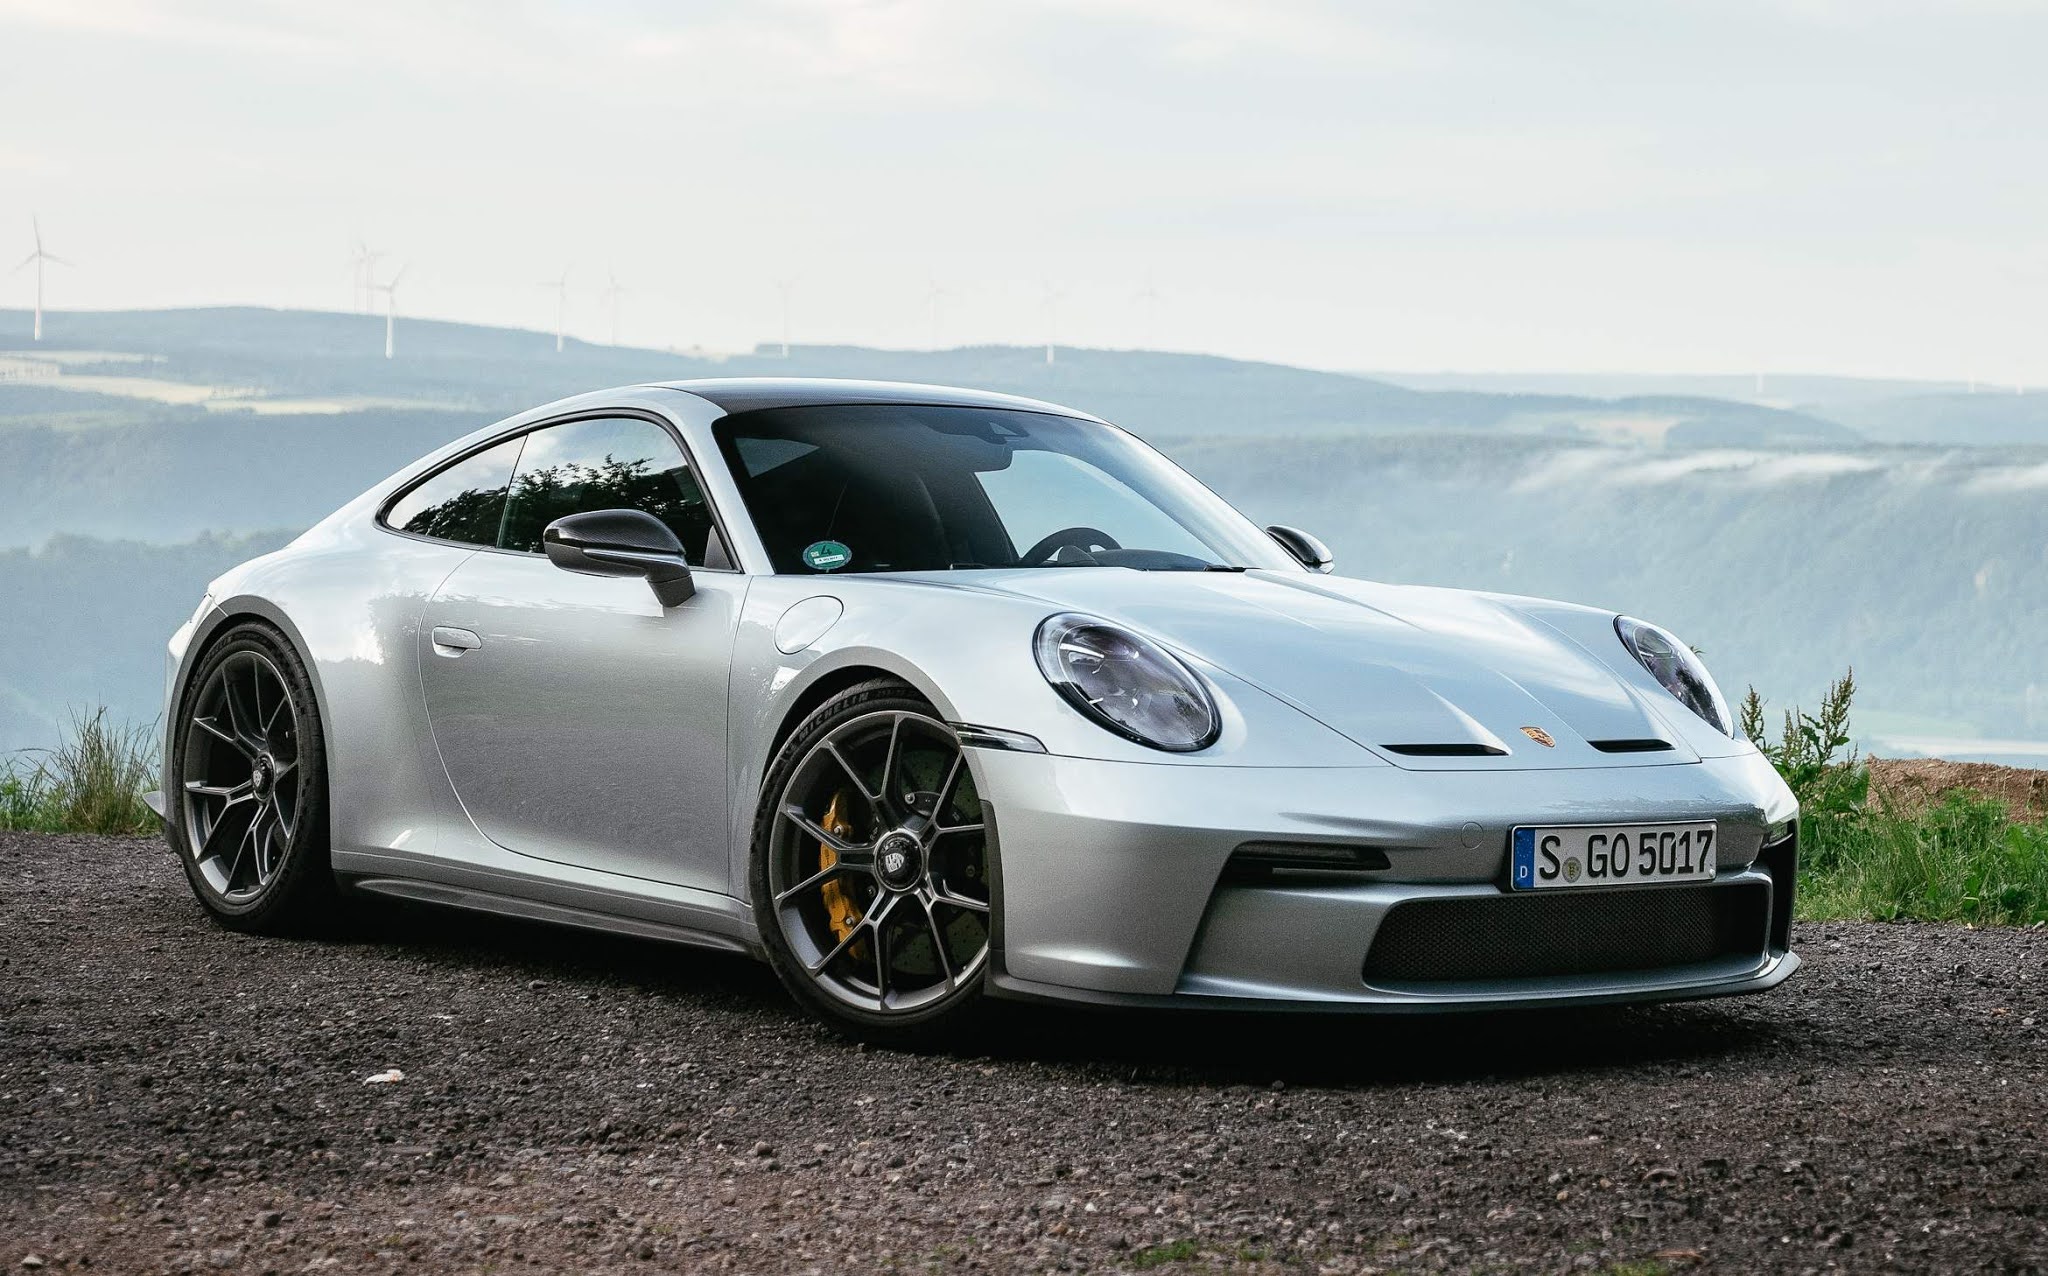 Porsche 911 GT3 Touring 2022 com câmbio PDK fotos oficiais reveladas